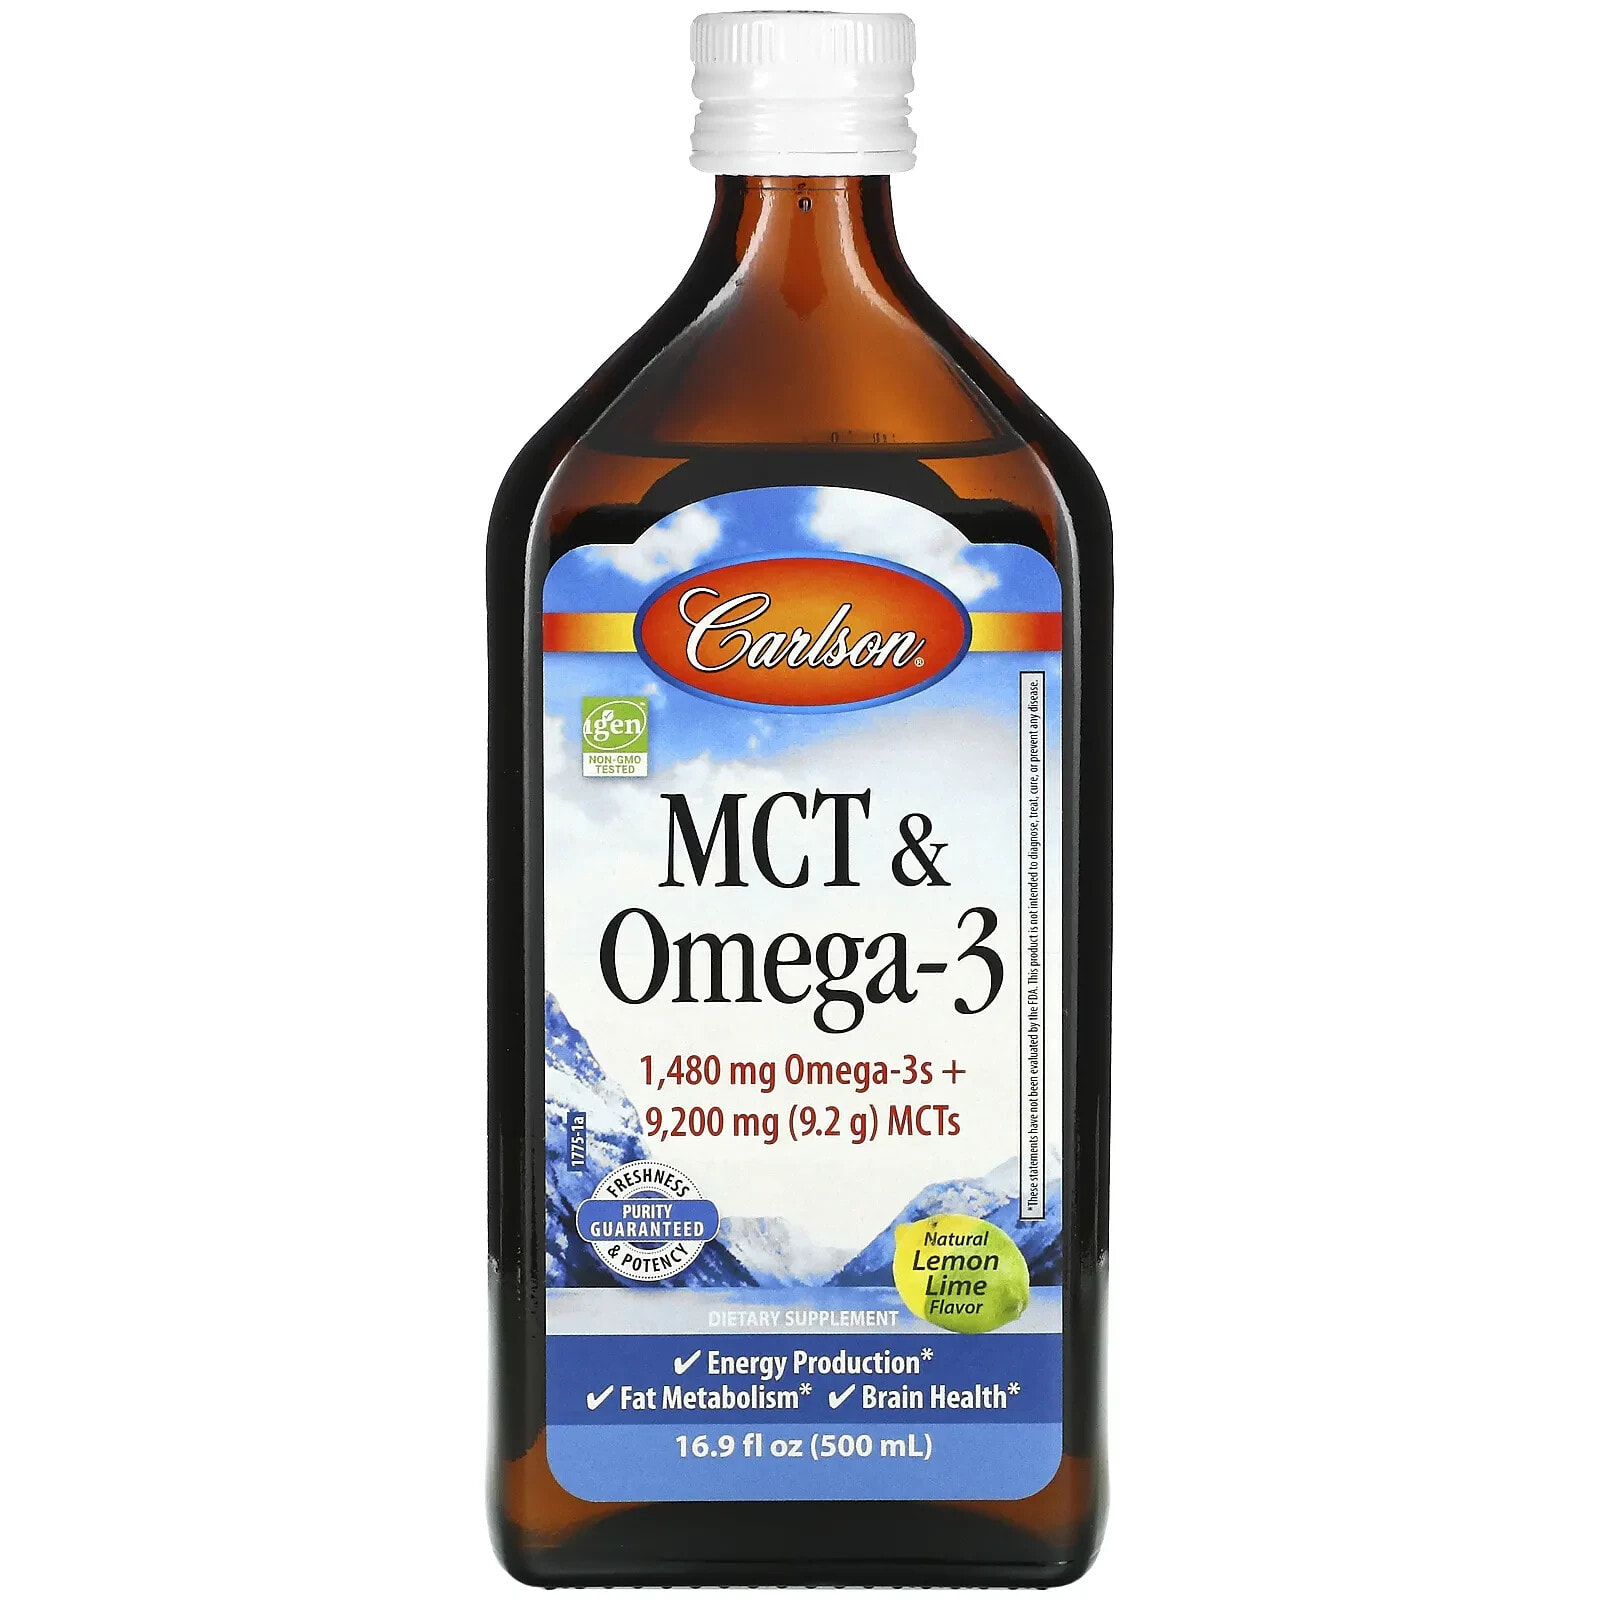 MCT & Omega-3, Natural Lemon Lime, 6.7 fl oz (200 ml)